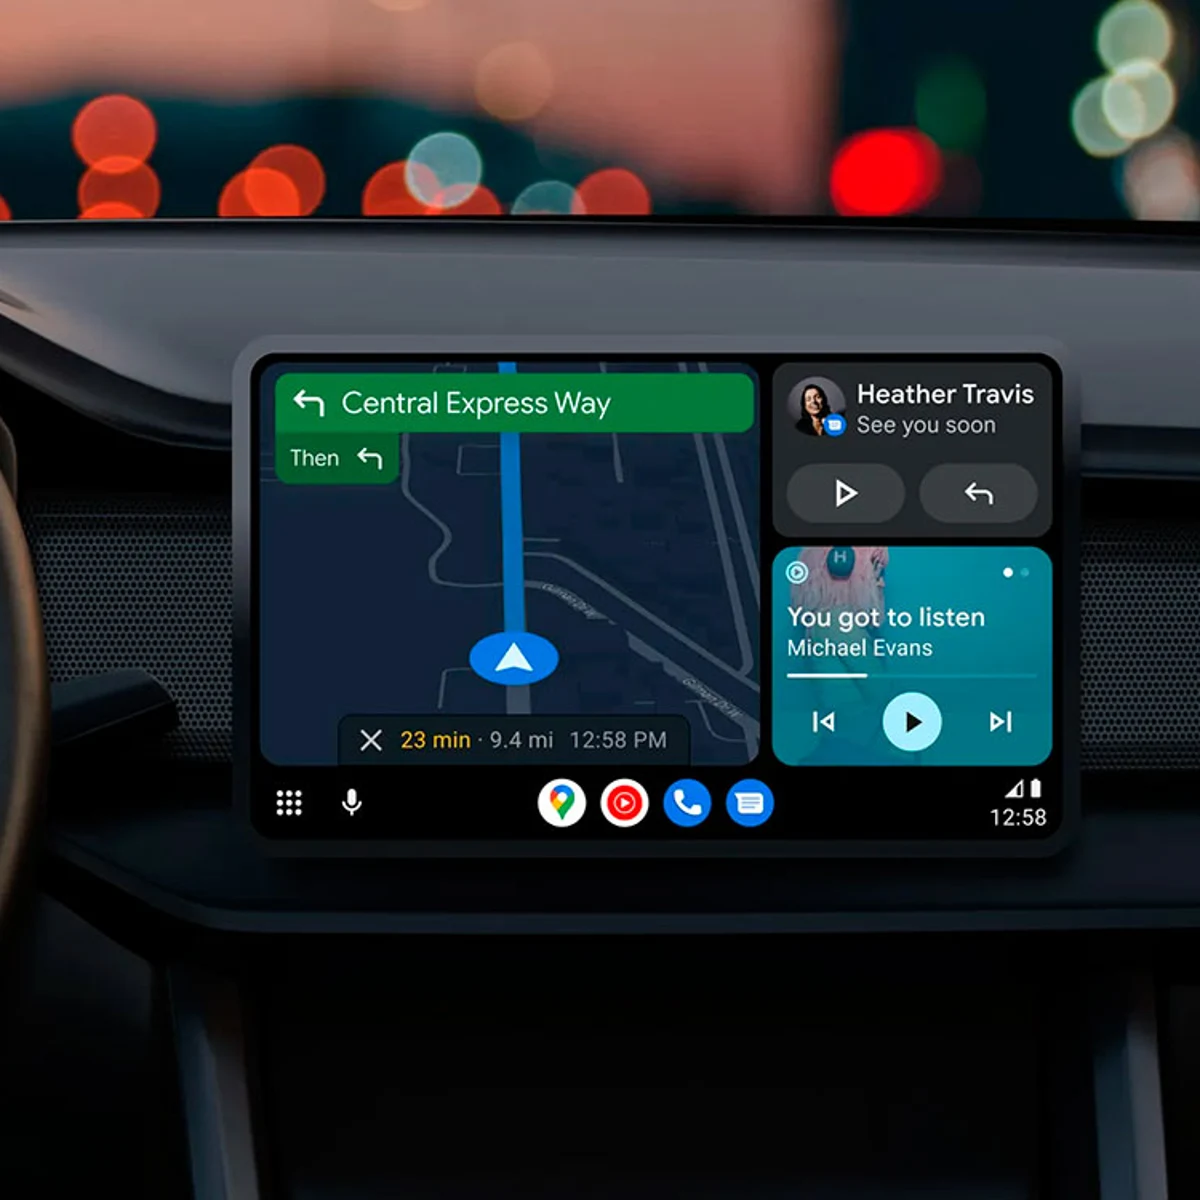 Android Auto va lento en mi coche: principales problemas y cómo  solucionarlos